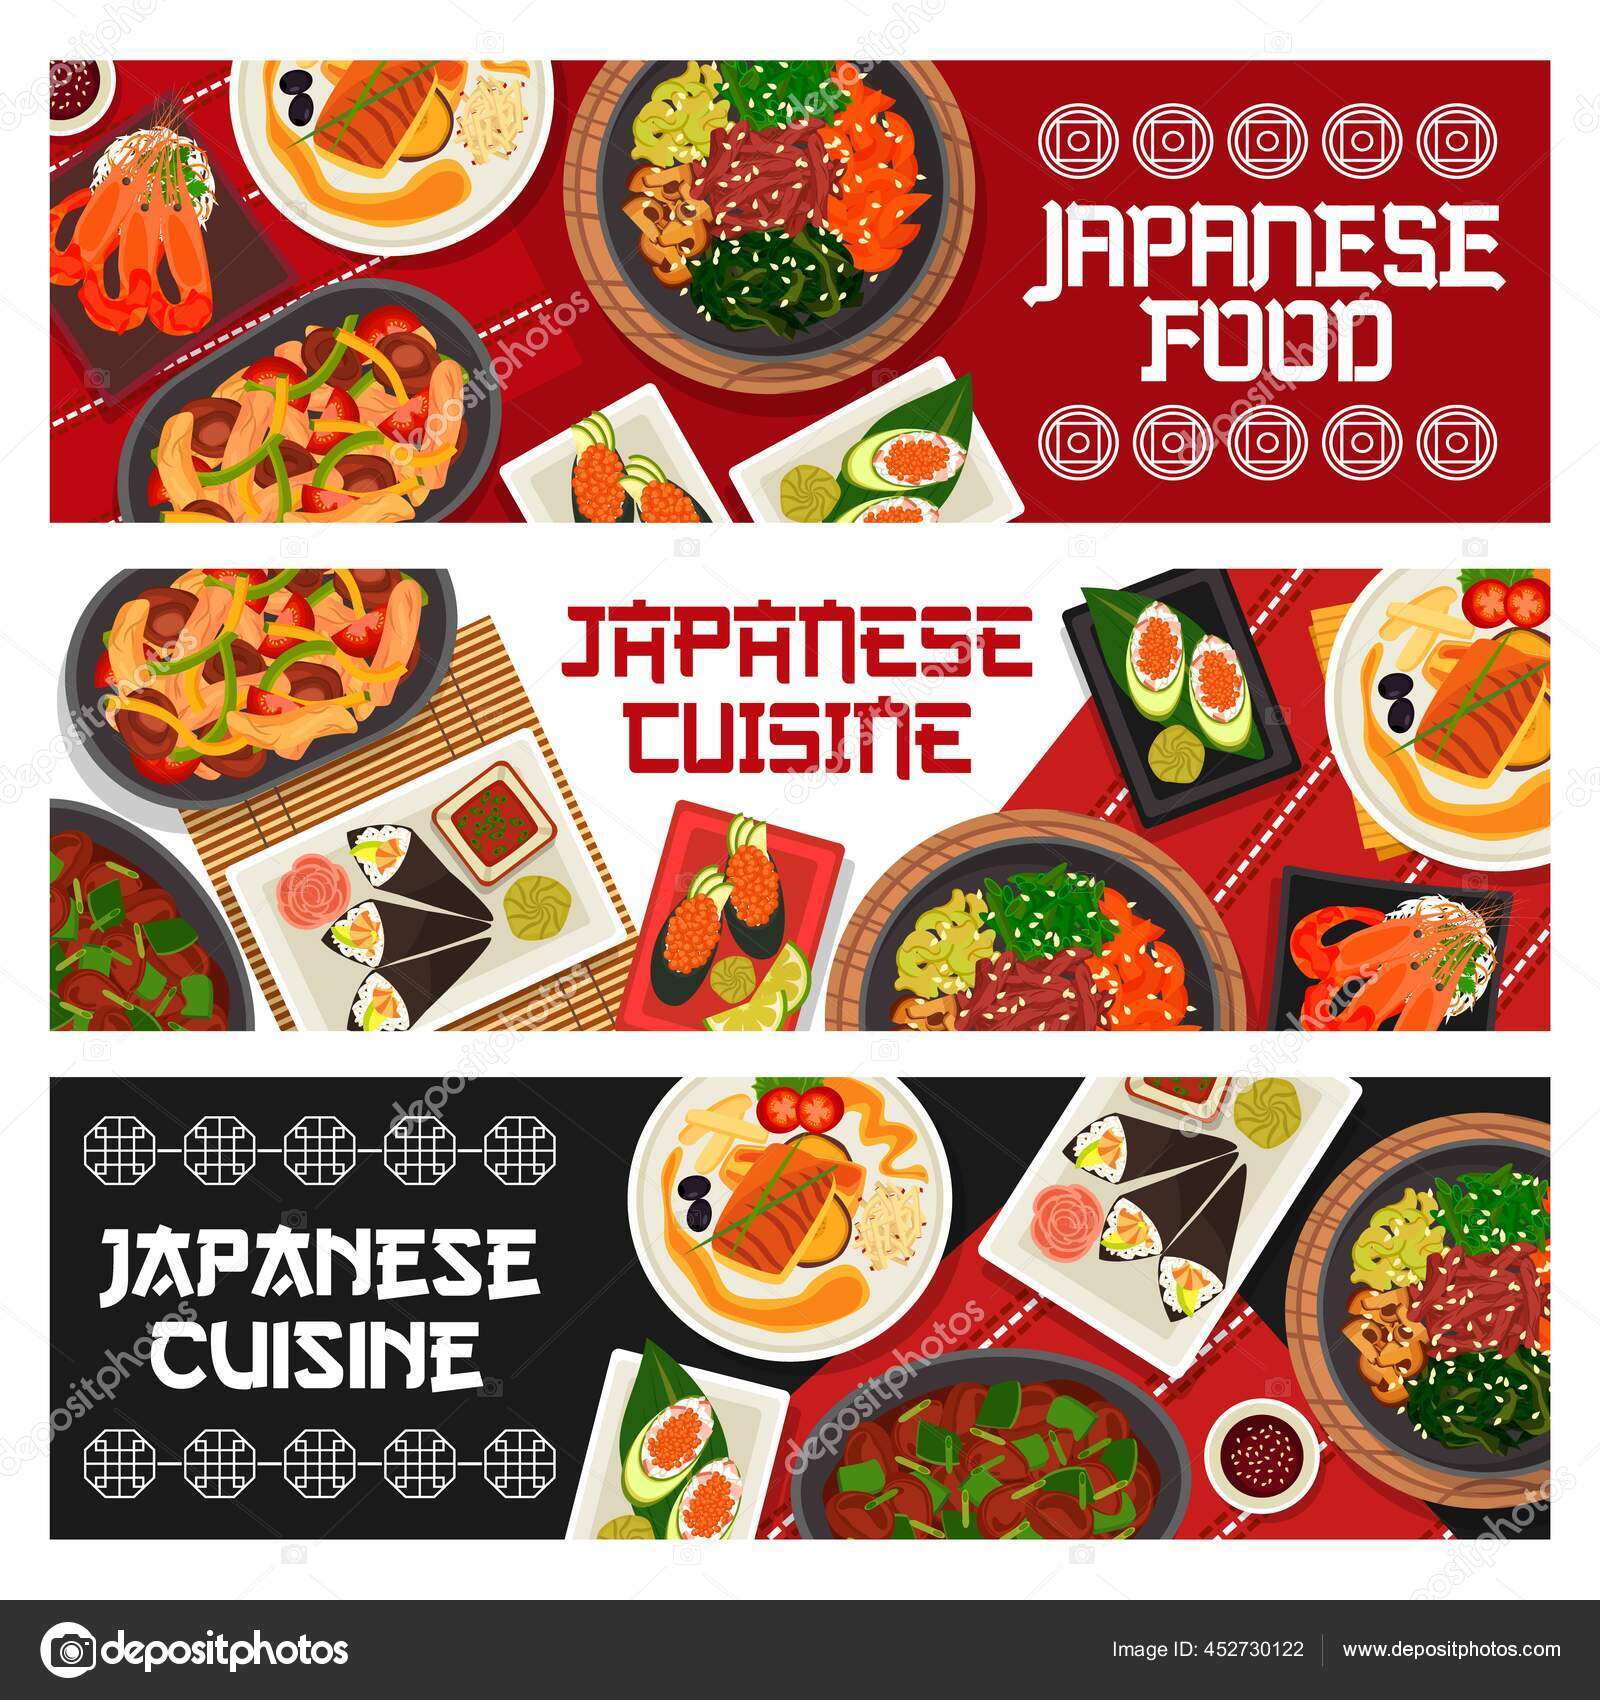 https://st2.depositphotos.com/1020070/45273/v/1600/depositphotos_452730122-stock-illustration-japanese-cuisine-vector-gunkun-sushi.jpg